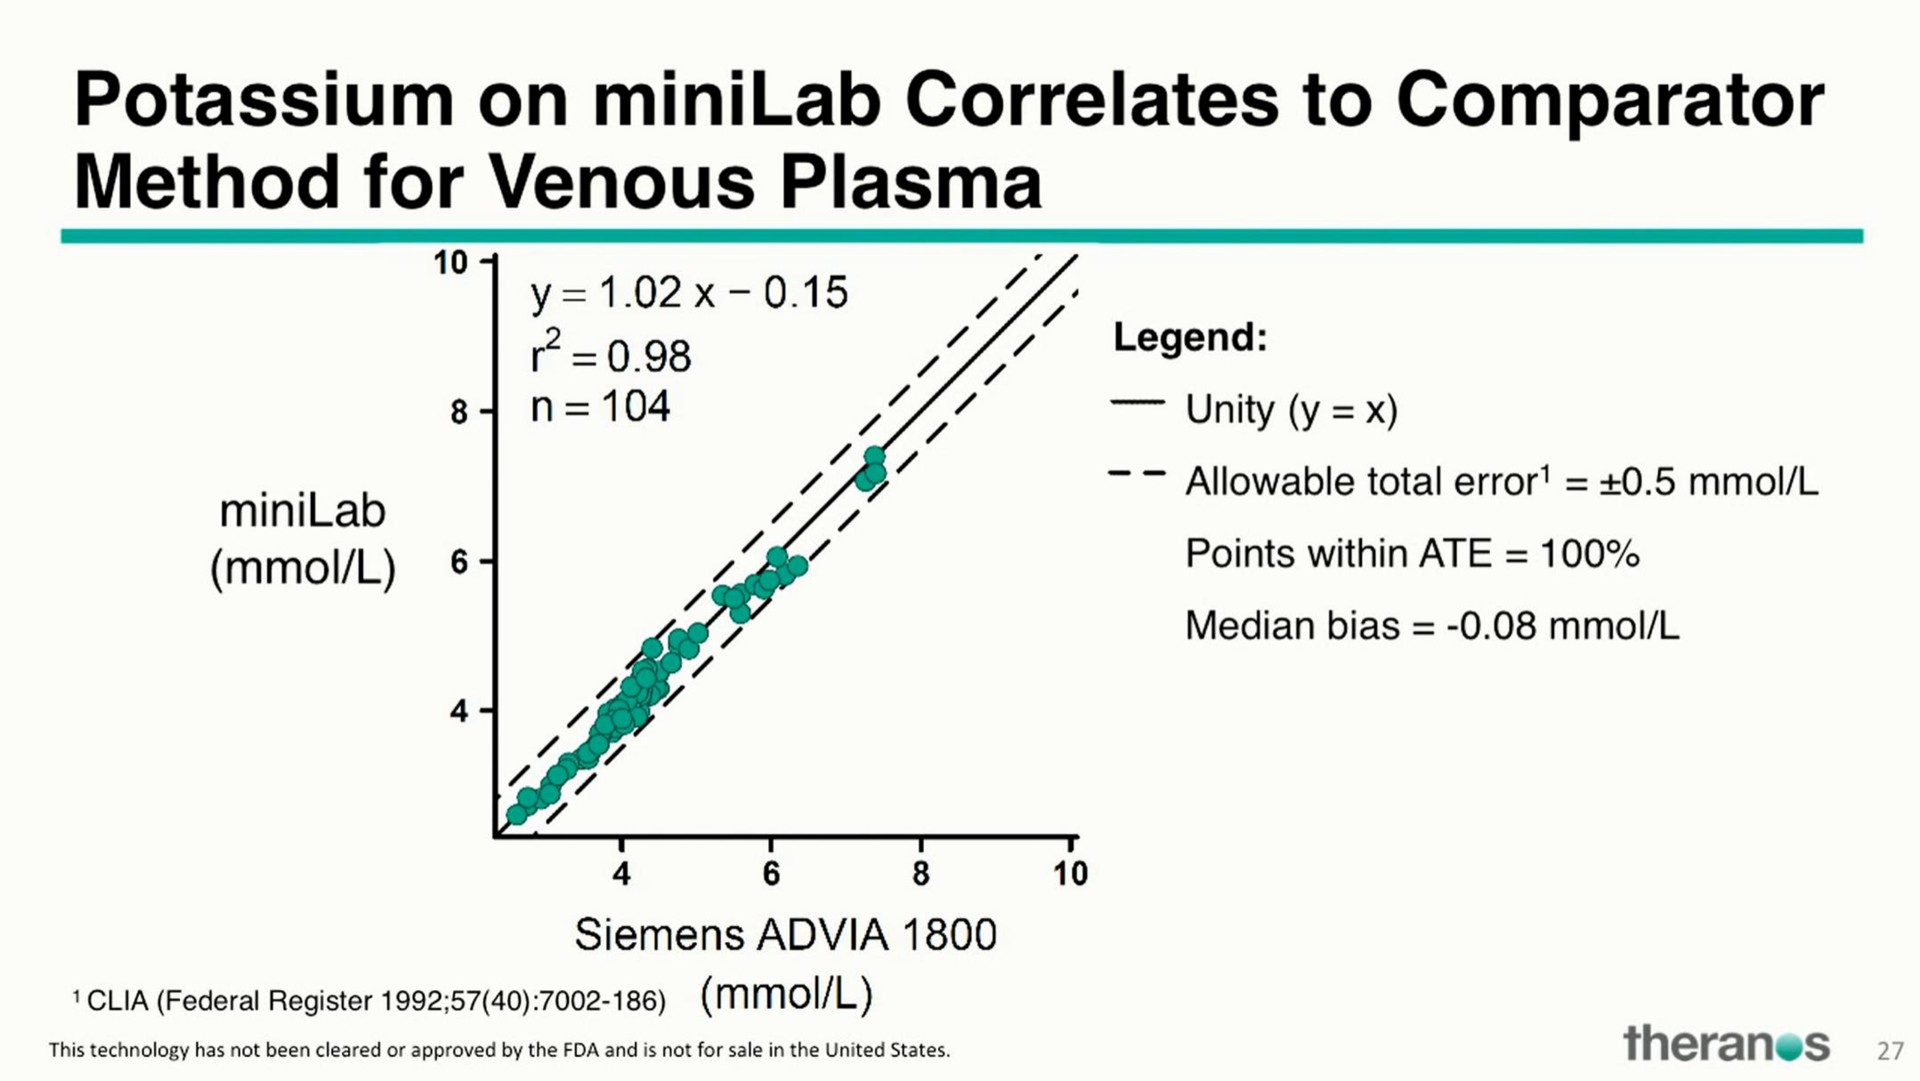 potassium on correlates to comparator method for venous plasma | Theranos